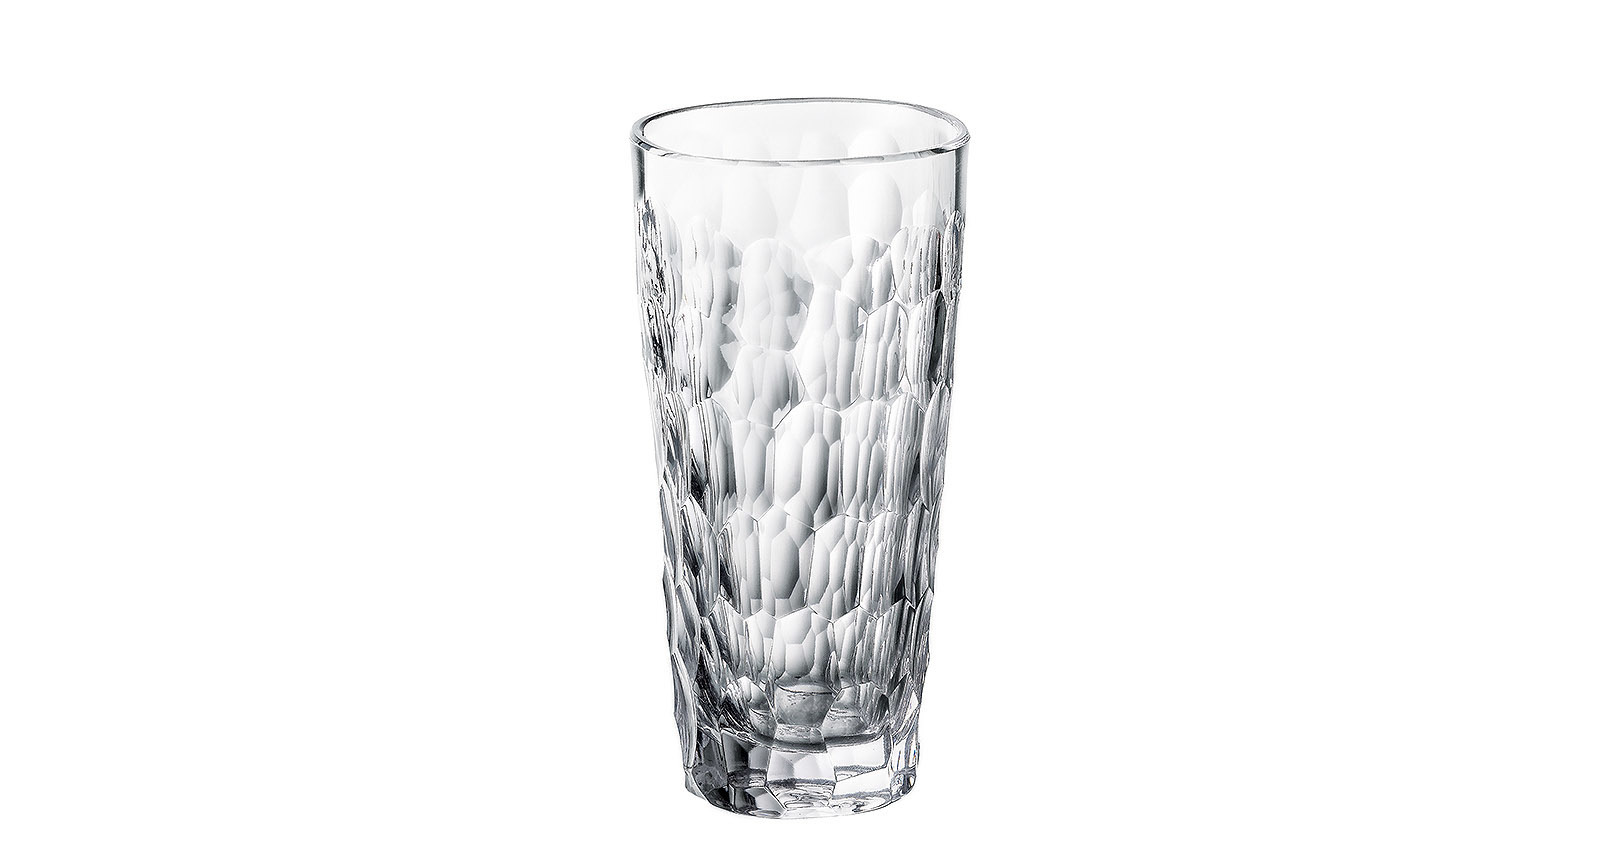 360 мл воды. Набор высоких стаканов Crystalite Bohemia Barley Twist 390мл (6 шт). Стакан 375 мл. Набор стаканов для воды Crystalite Bohemia Ardea/Amundsen 320 мл (6 шт).